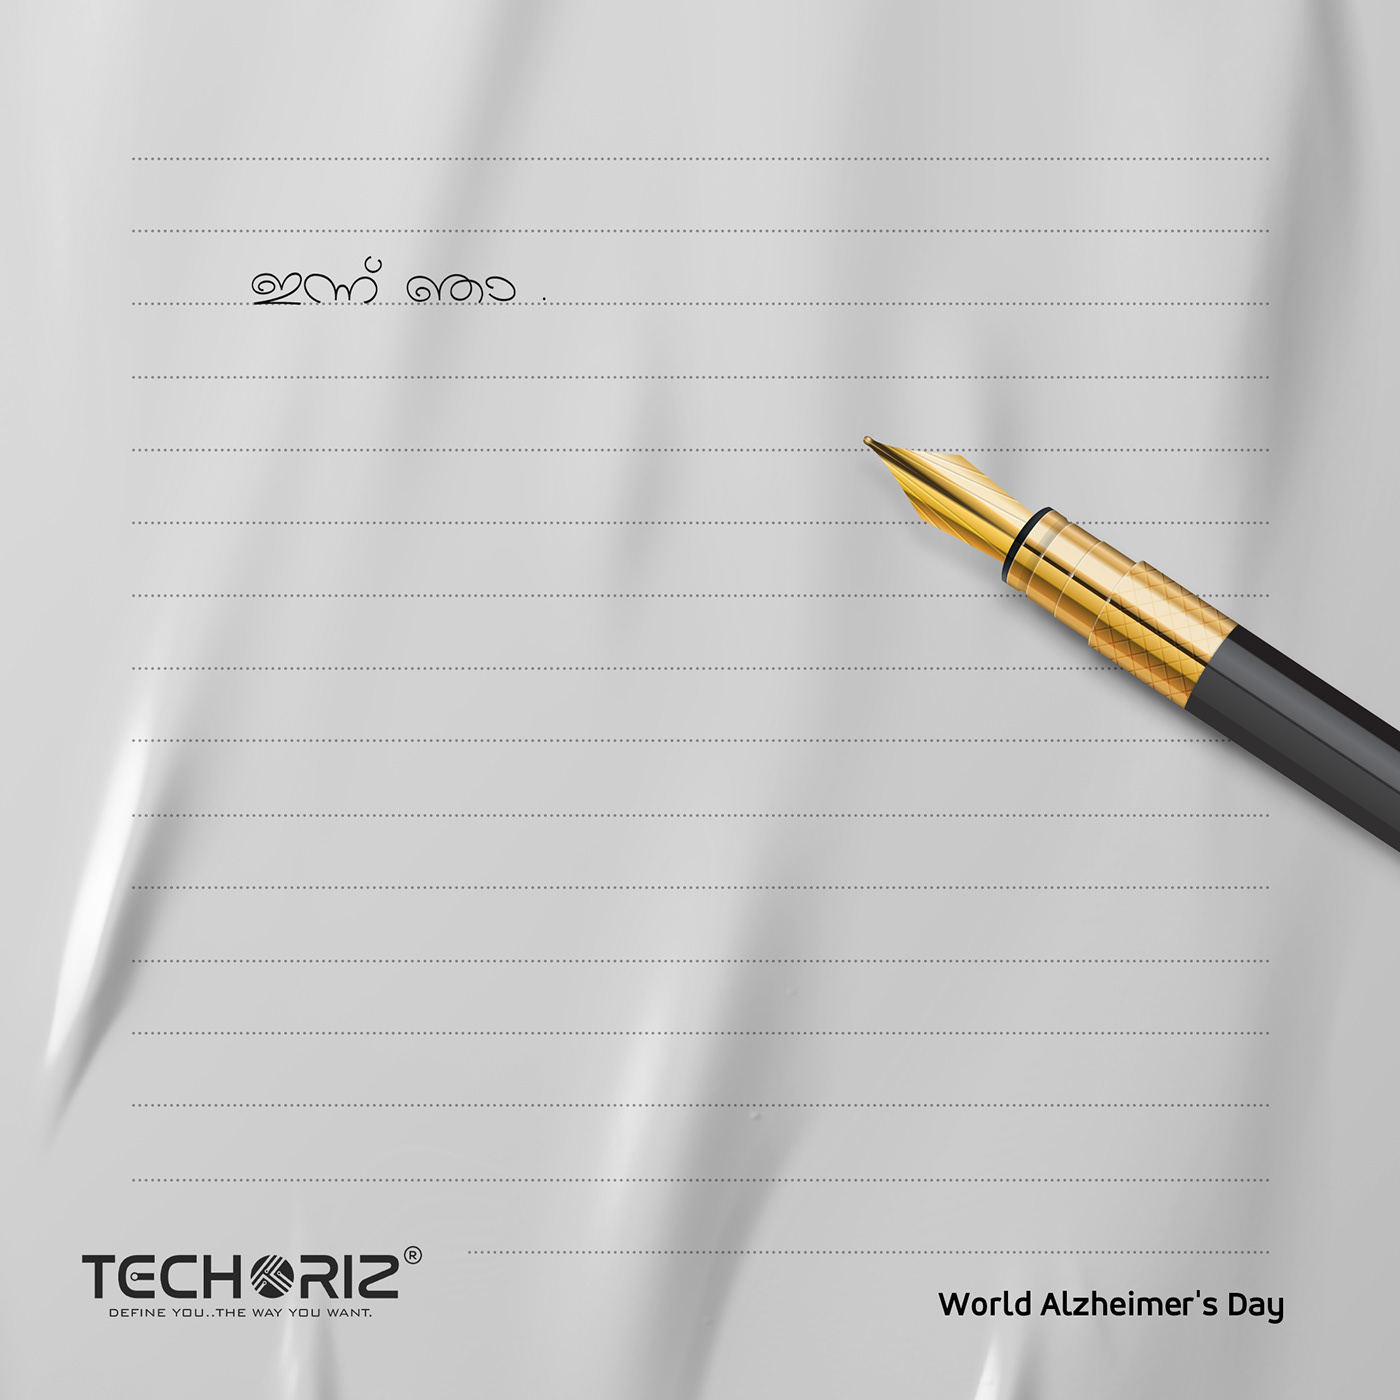 World Alzheimer's Day creative by techoriz